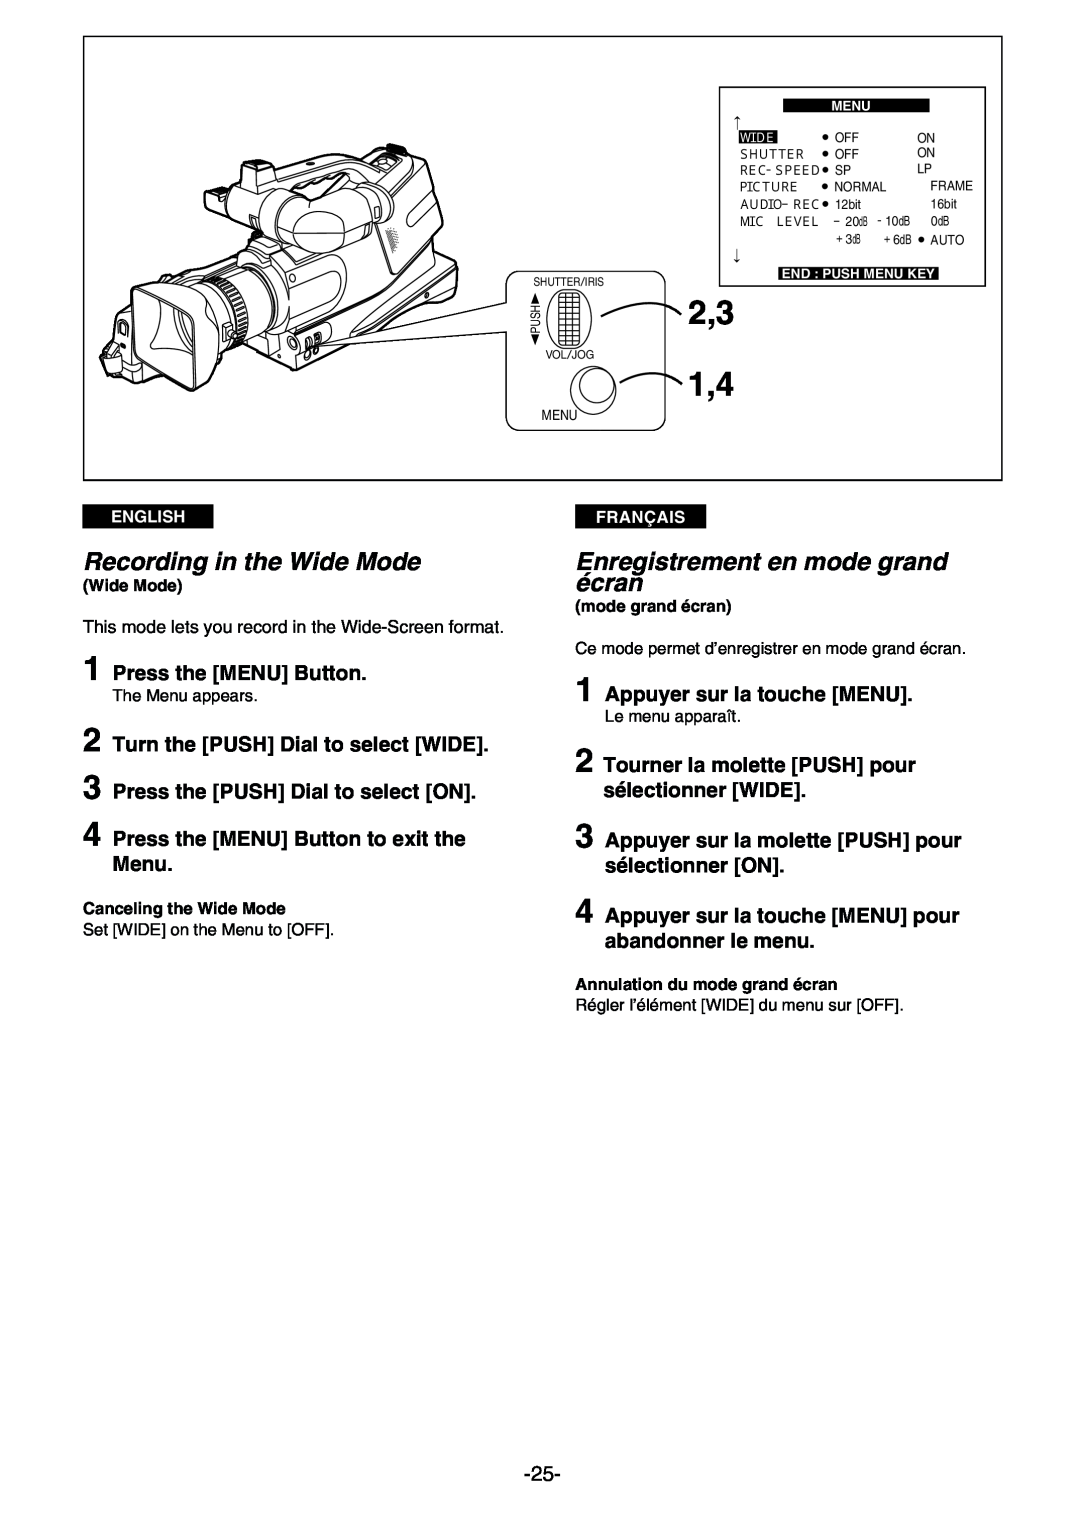 Panasonic AG- DVC 15P manual Enregistrement en mode grand écran, Appuyer sur la touche MENU, 2,3 1,4, Français, Menu, Ｗｉｄｅ 